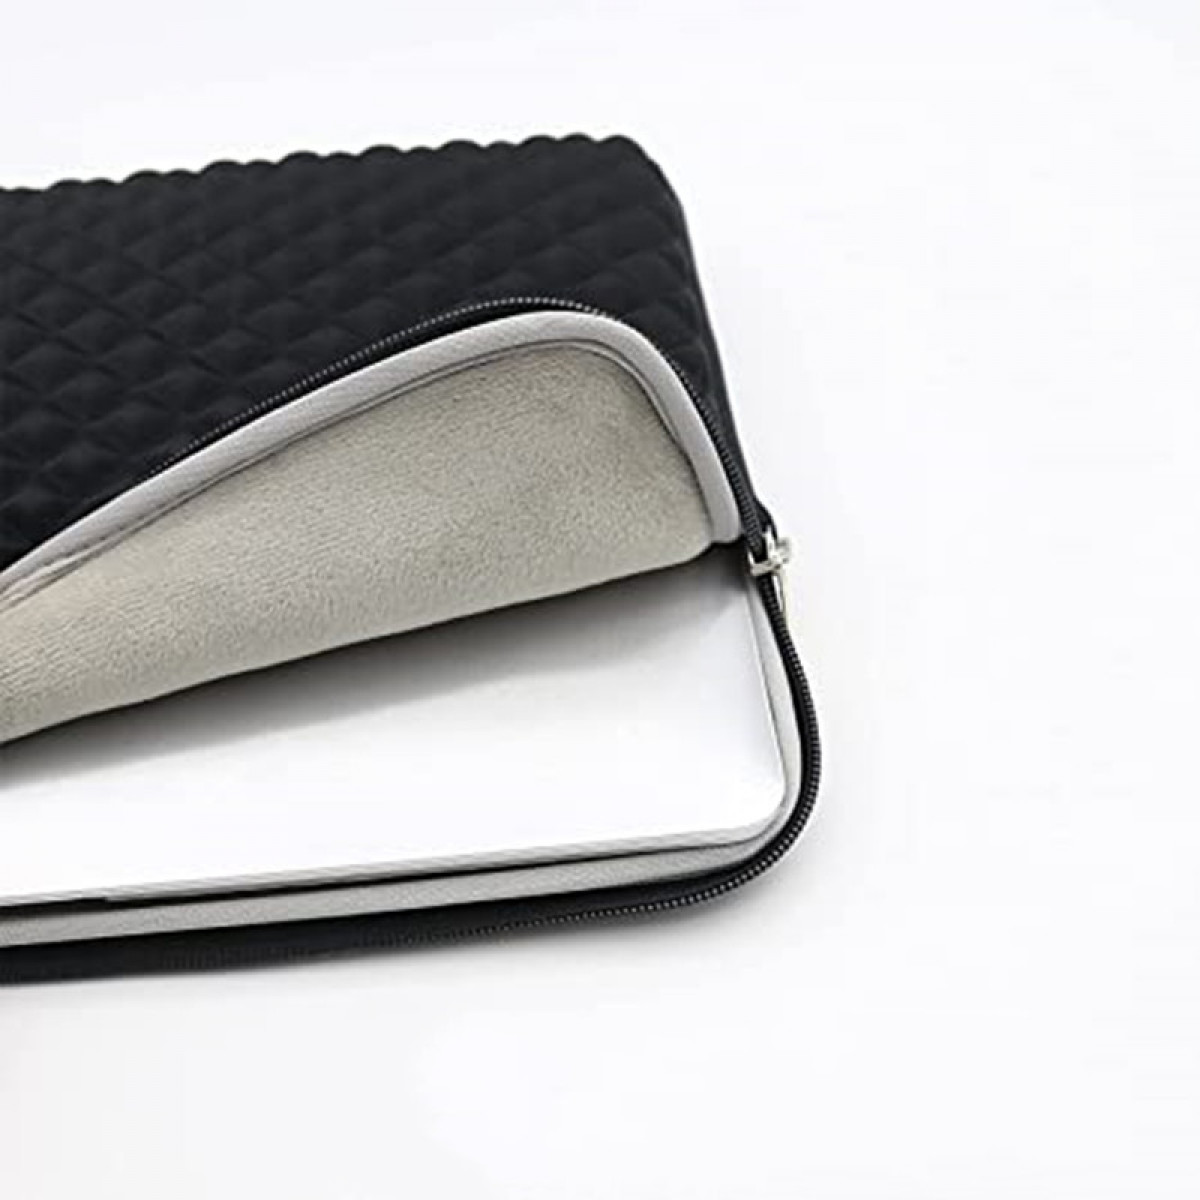 INF schwarz Laptophülle Laptoptasche Sleeve für universal PU-Leder,